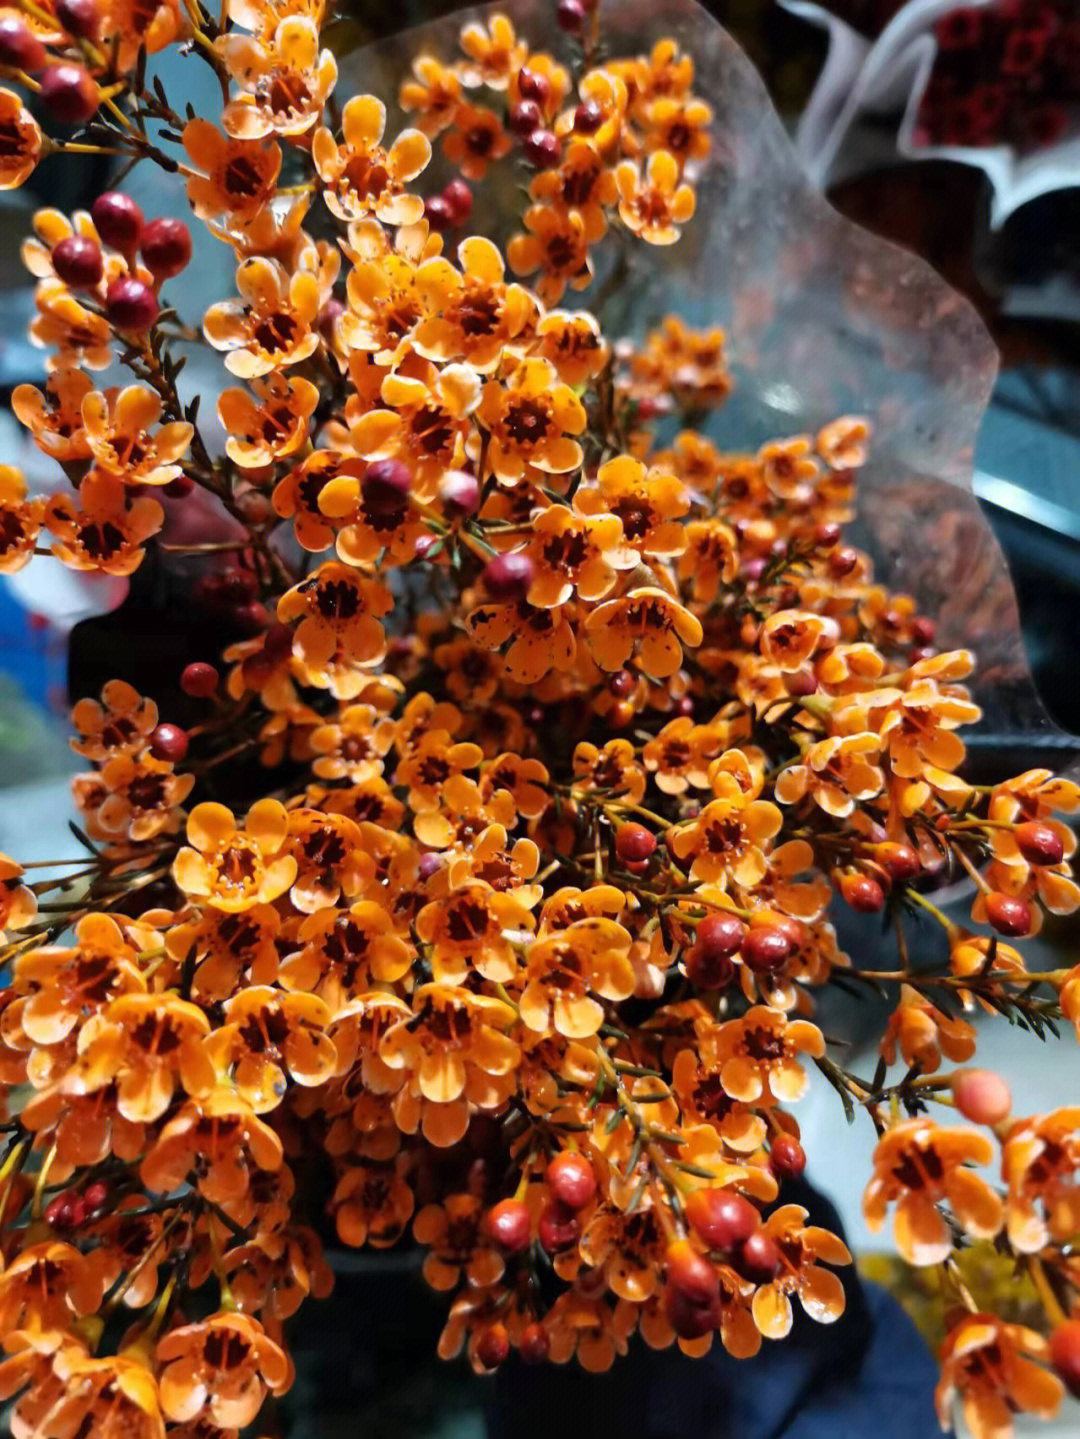 澳洲腊梅澳洲腊梅的花语是高洁,坚贞,之所以有这样的花语,主要是澳洲